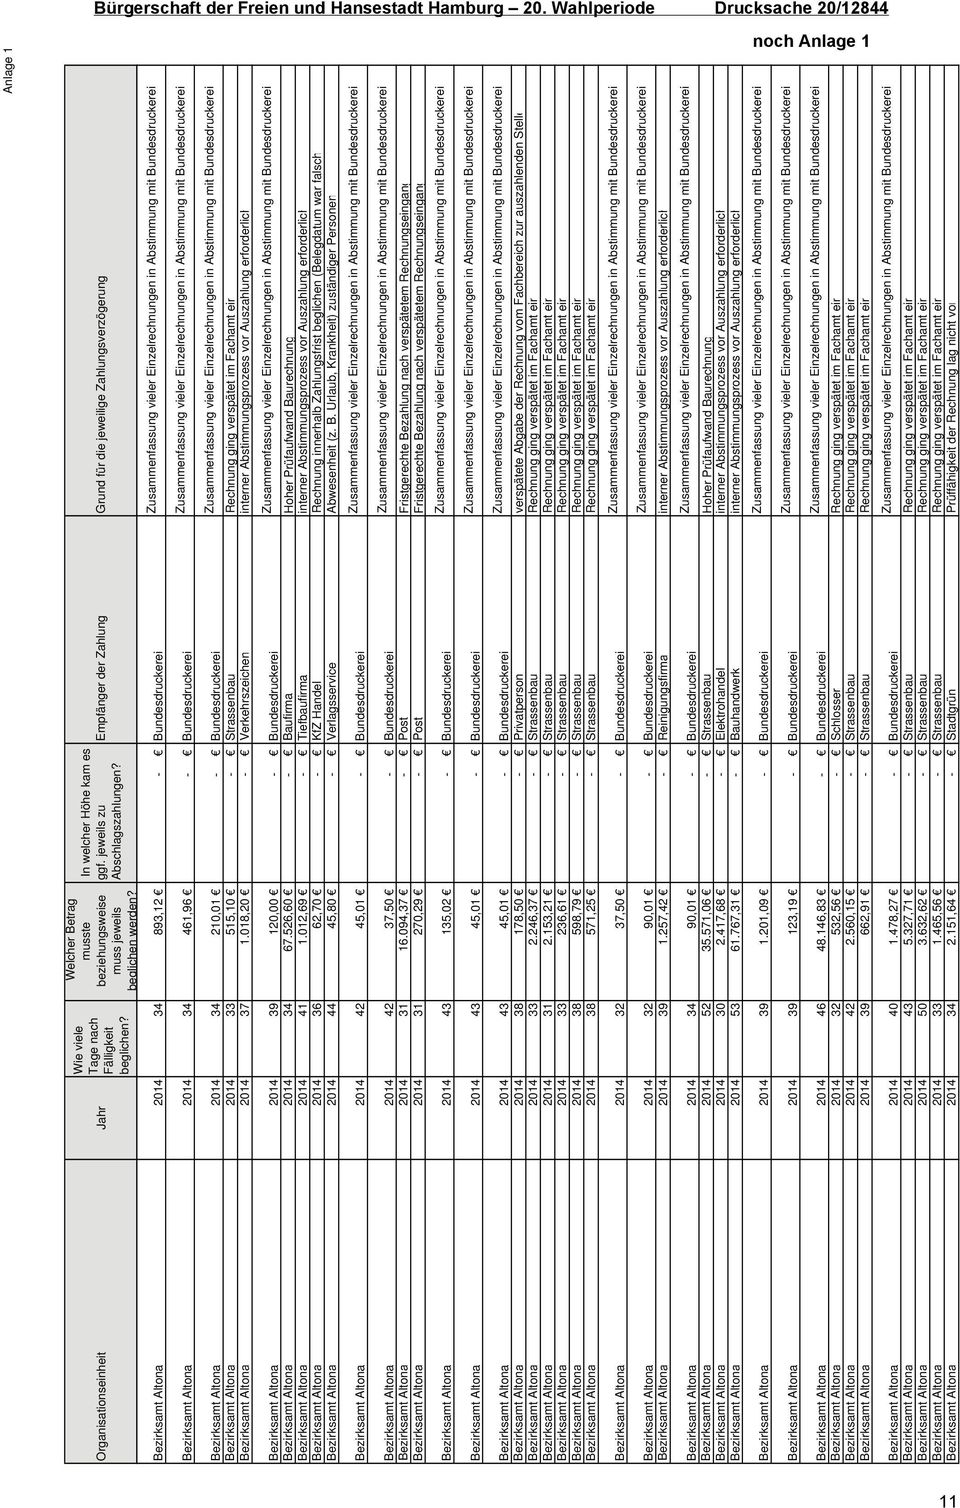 Zusammenfassung vieler Einzelrechnungen in Abstimmung mit Bundesdruckerei Bezirksamt Altona 2014 34 210,01 - Bundesdruckerei Zusammenfassung vieler Einzelrechnungen in Abstimmung mit Bundesdruckerei